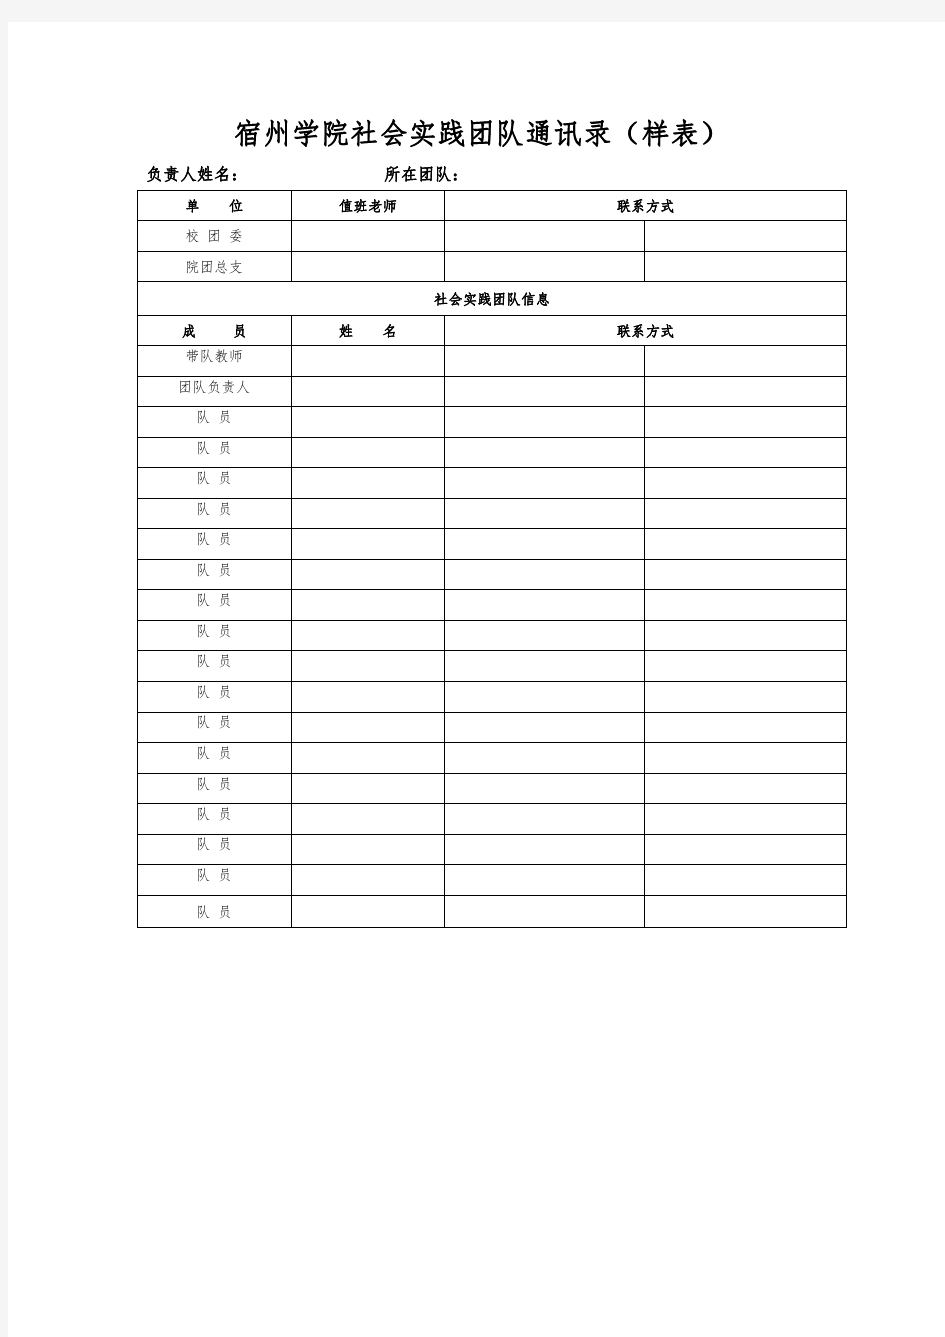 《宿州学院2016年暑期社会实践活动实践团队队通讯录》(样表)